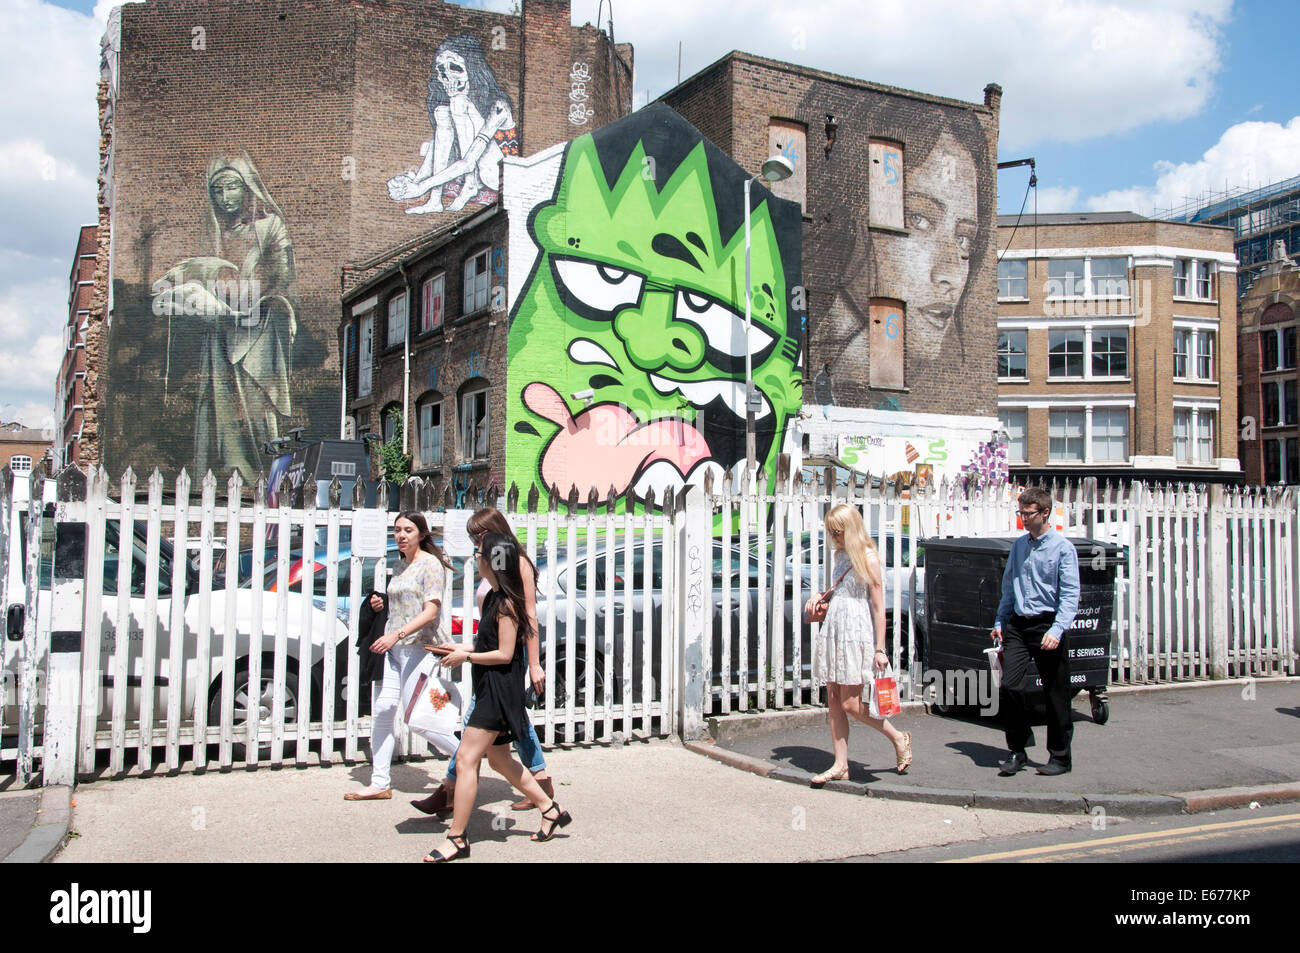 Leonard Street, Londres. L'Art de rue sur les bâtiments avec de jeunes personnes marchant passé au soleil Banque D'Images